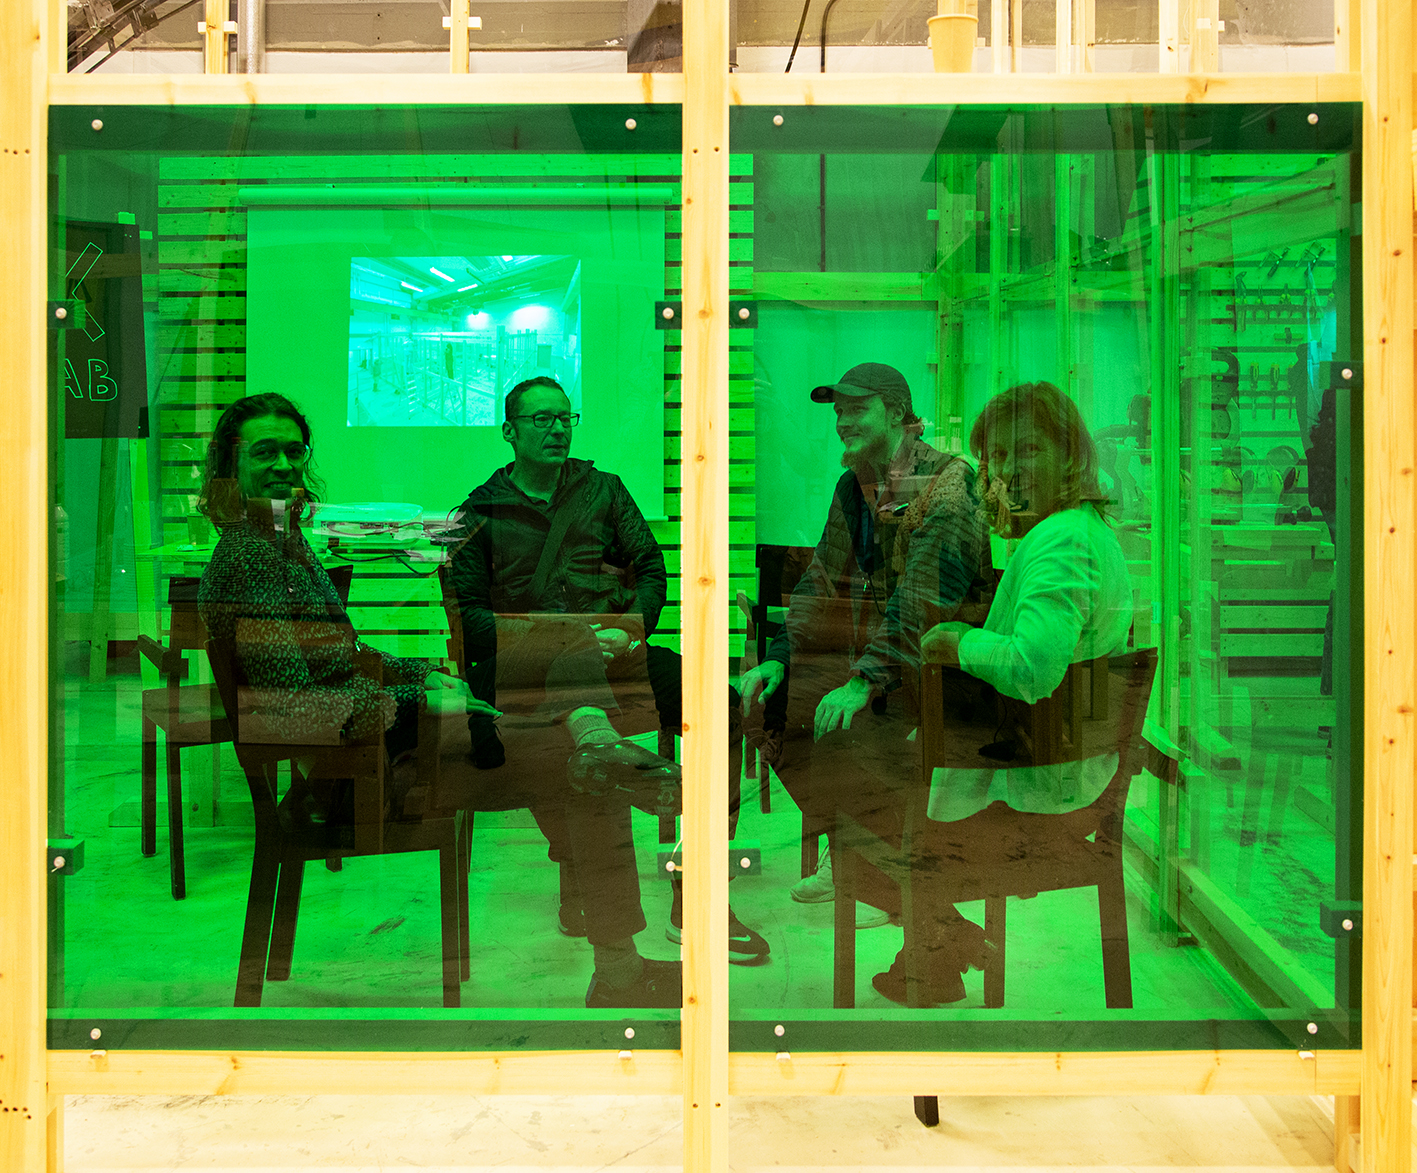 Fyra LTH-lärare sitter och talar eller ser in i kameran bakom en grön glasruta. De ser glada ut. Foto.